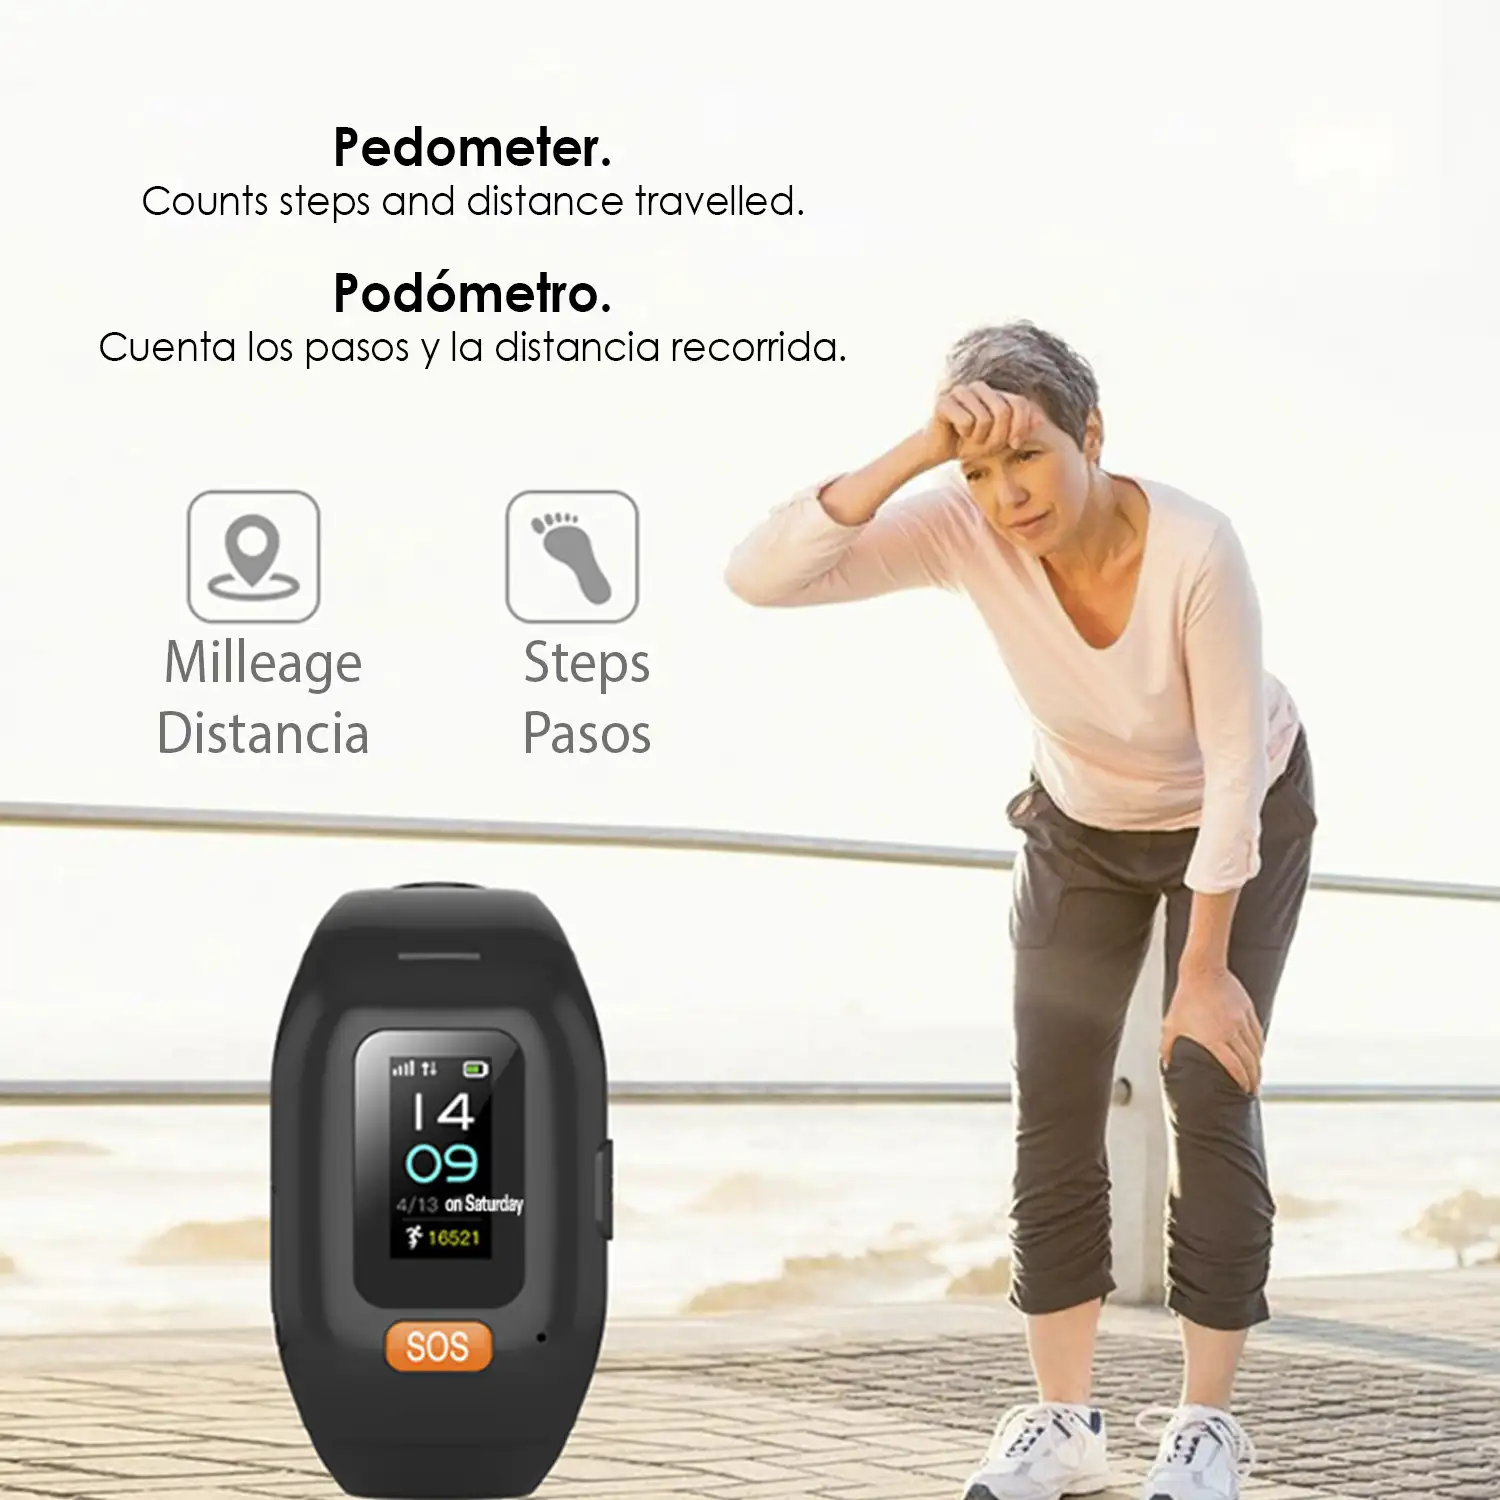 Brazalete localizador GPS con pantalla táctil, botón SOS e intercomunicador. Especial personas mayores. Con monitor cardíaco.